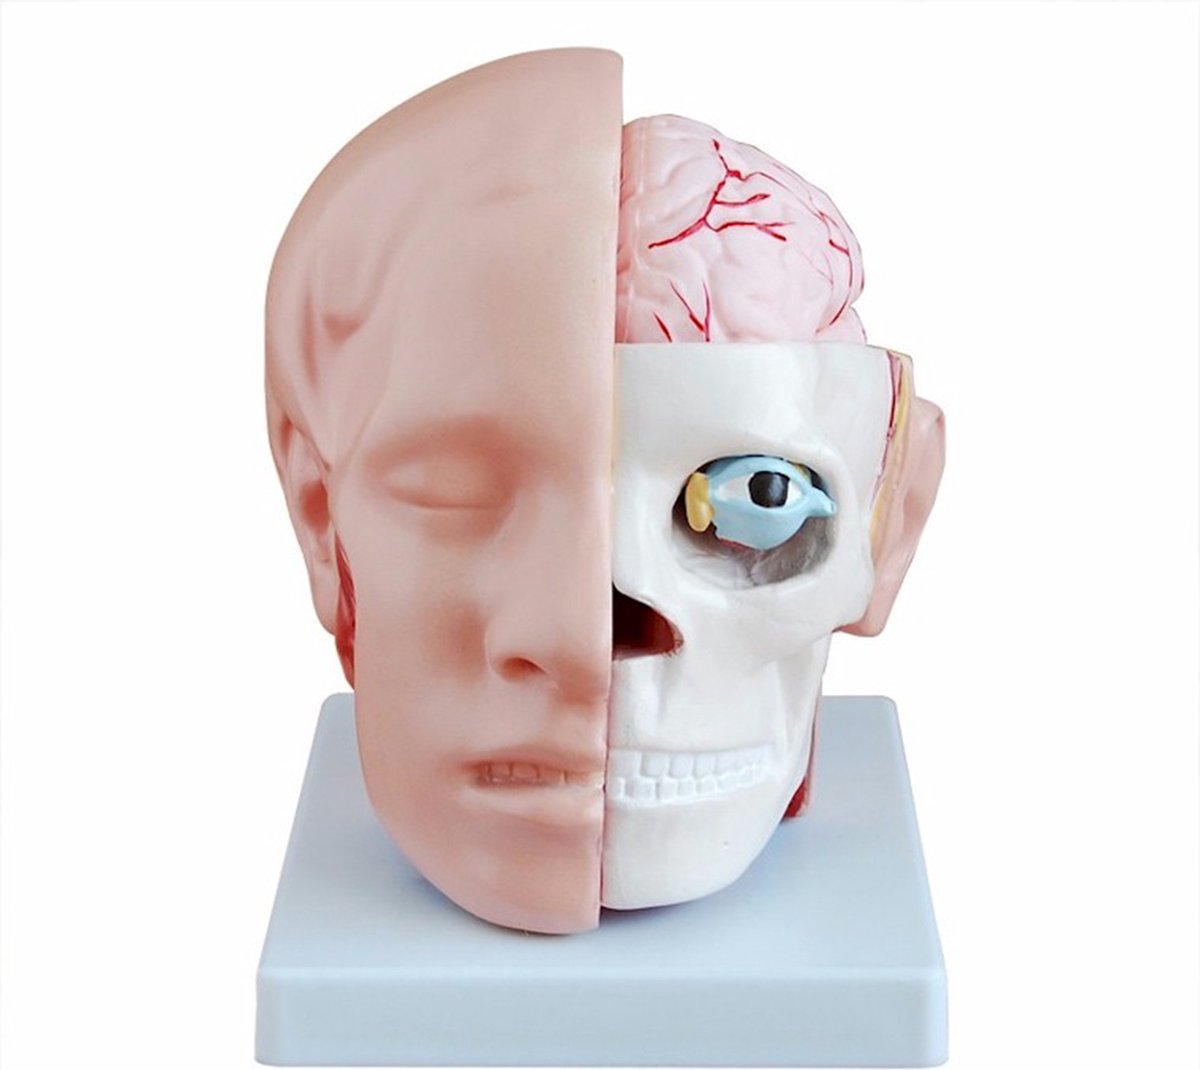 Hoofd met Hersenen - Anatomisch model - voor anatomie studie van het menselijk lichaam